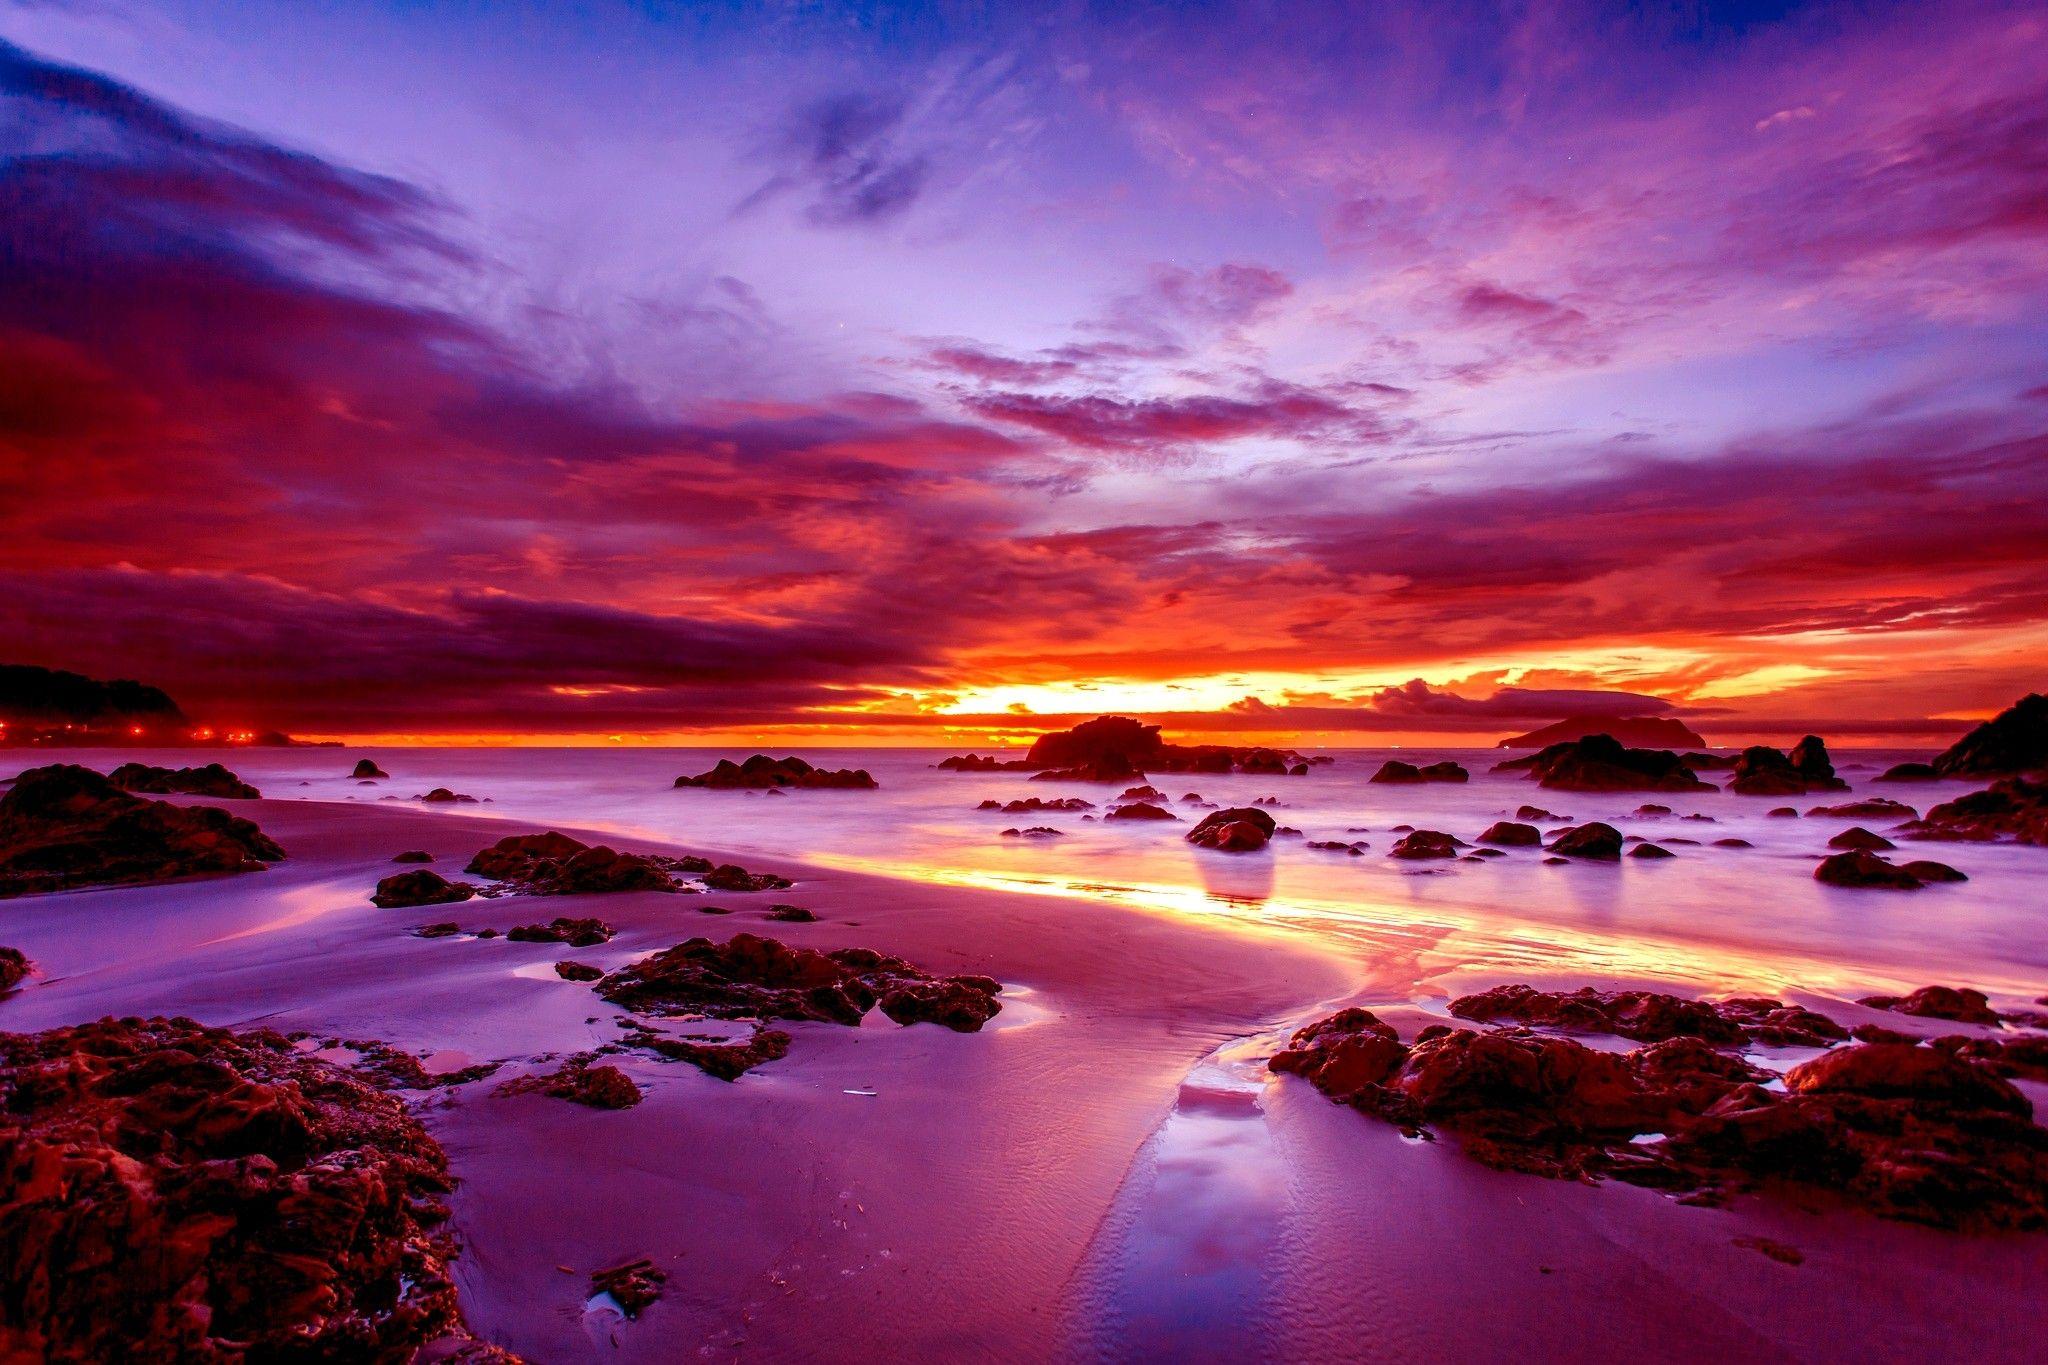 Australian Beach Sunset Wallpaper at